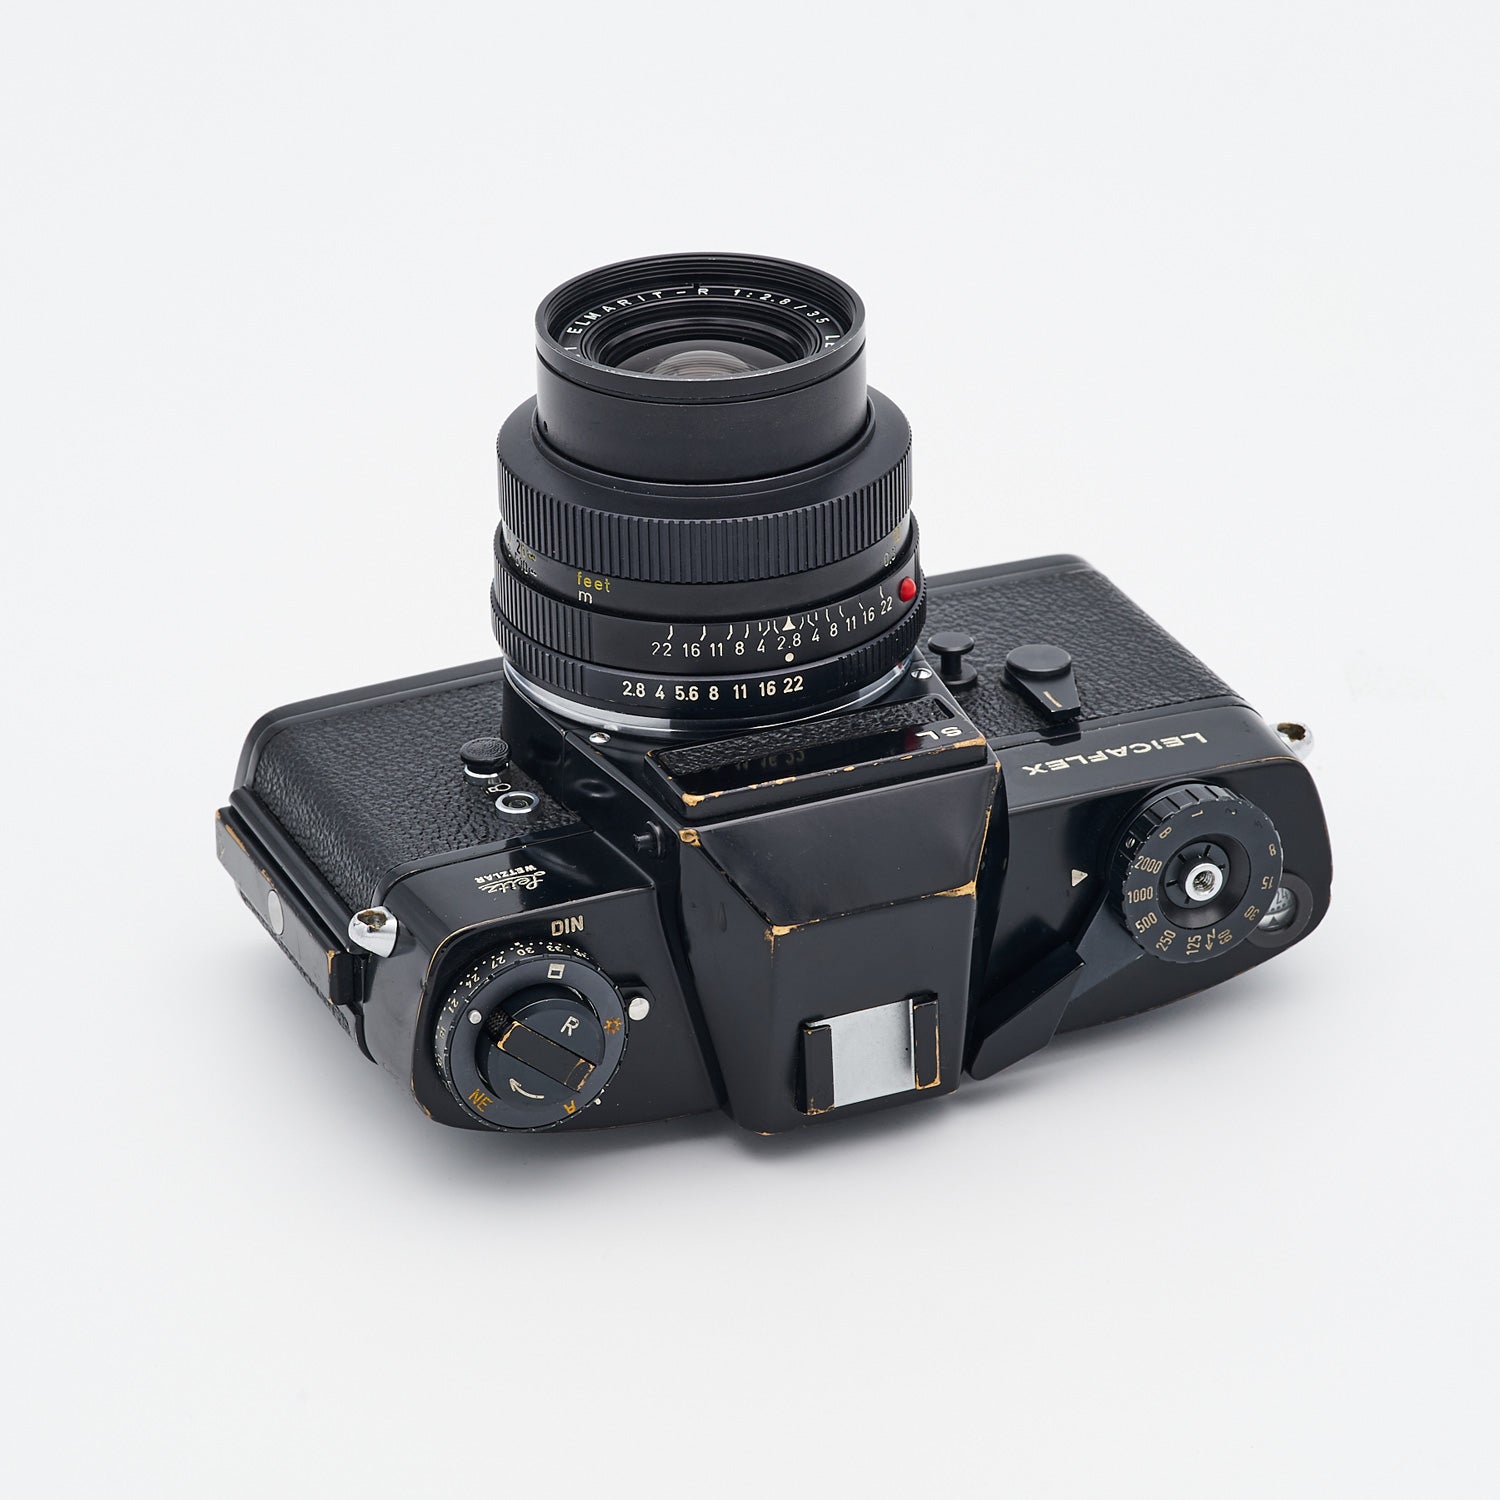 Leicaflex SL (S/N 1275759) Set inkl. Elmarit-R 2.8/35mm (S/N 2170001)